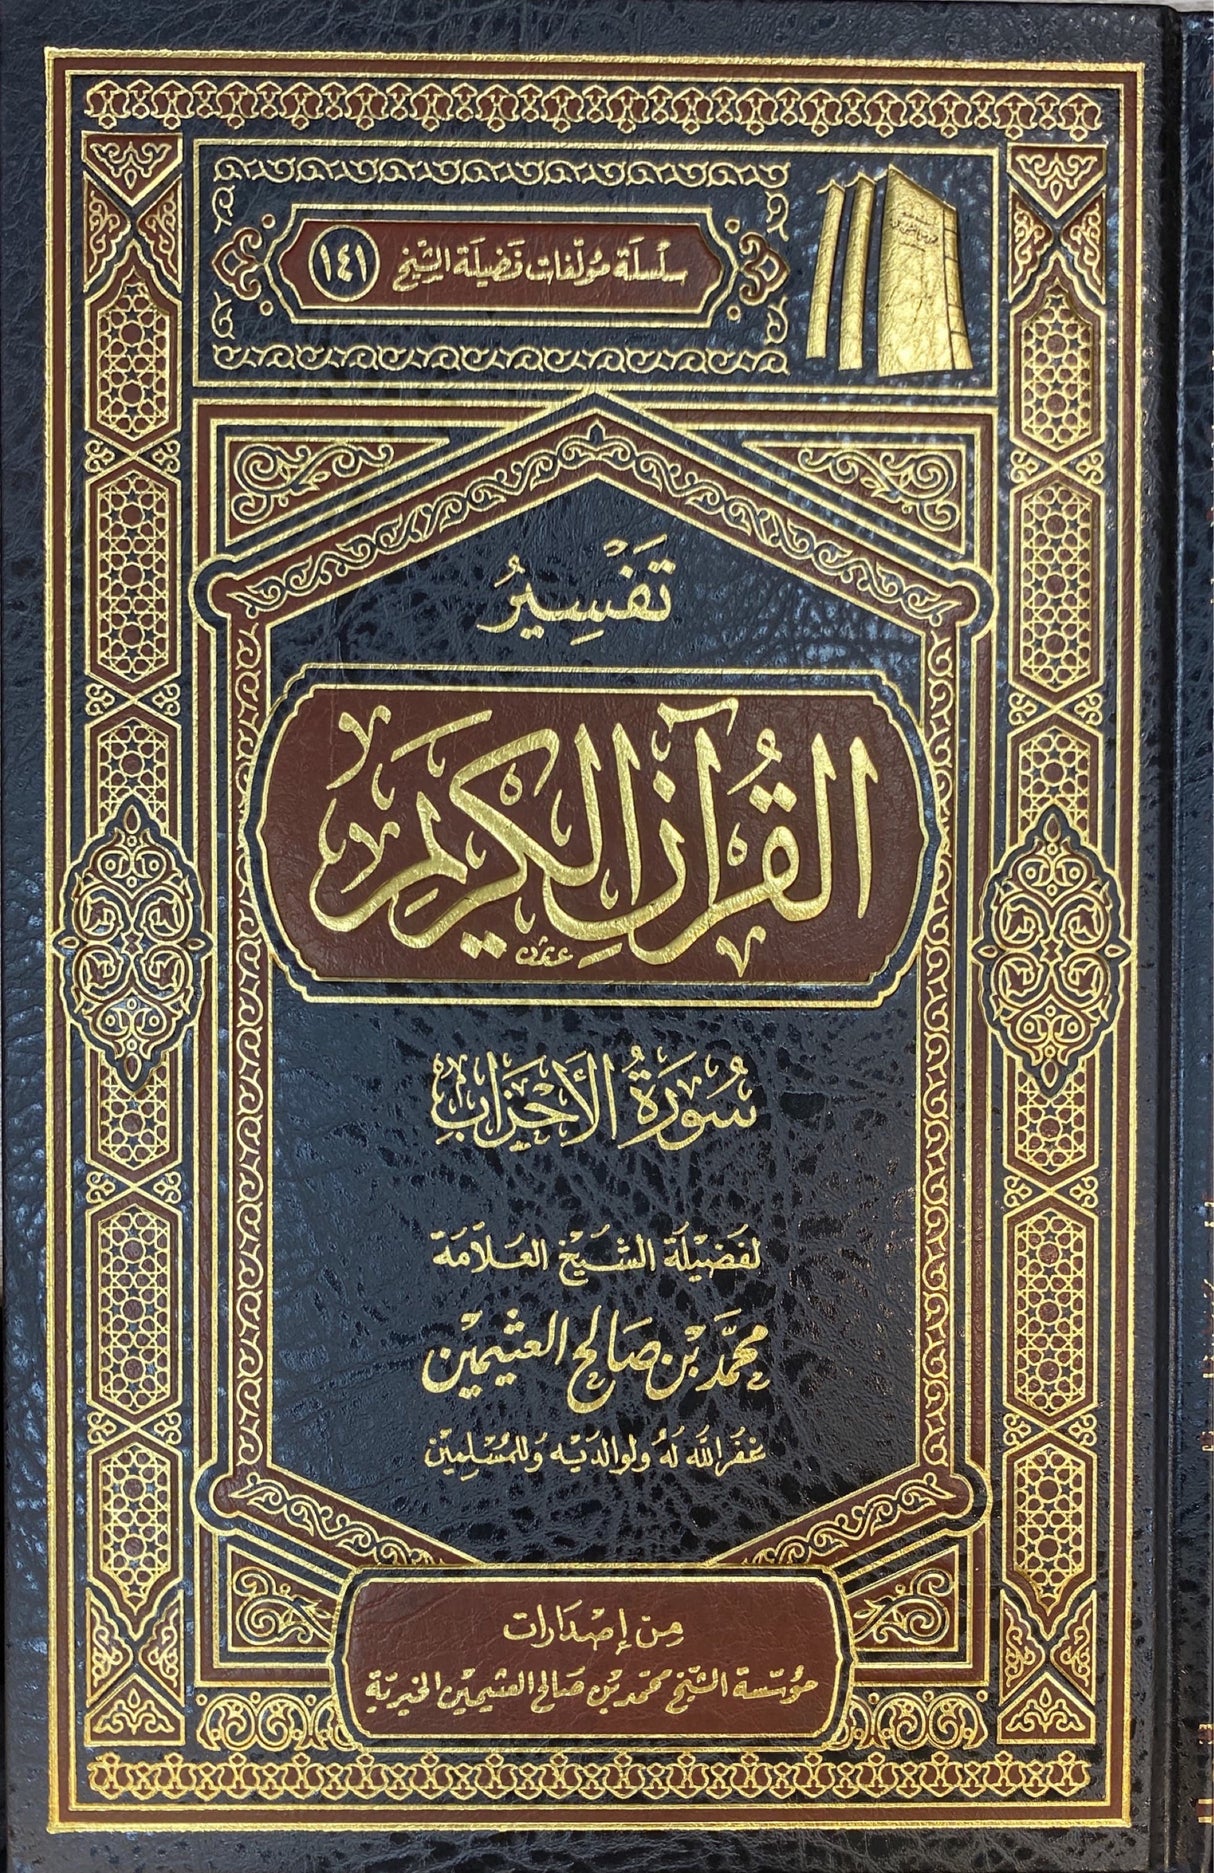 تفسير القران الكريم - سورة الأحزاب    Tafsir Al Quran Al Karim - Surah al Ahzab